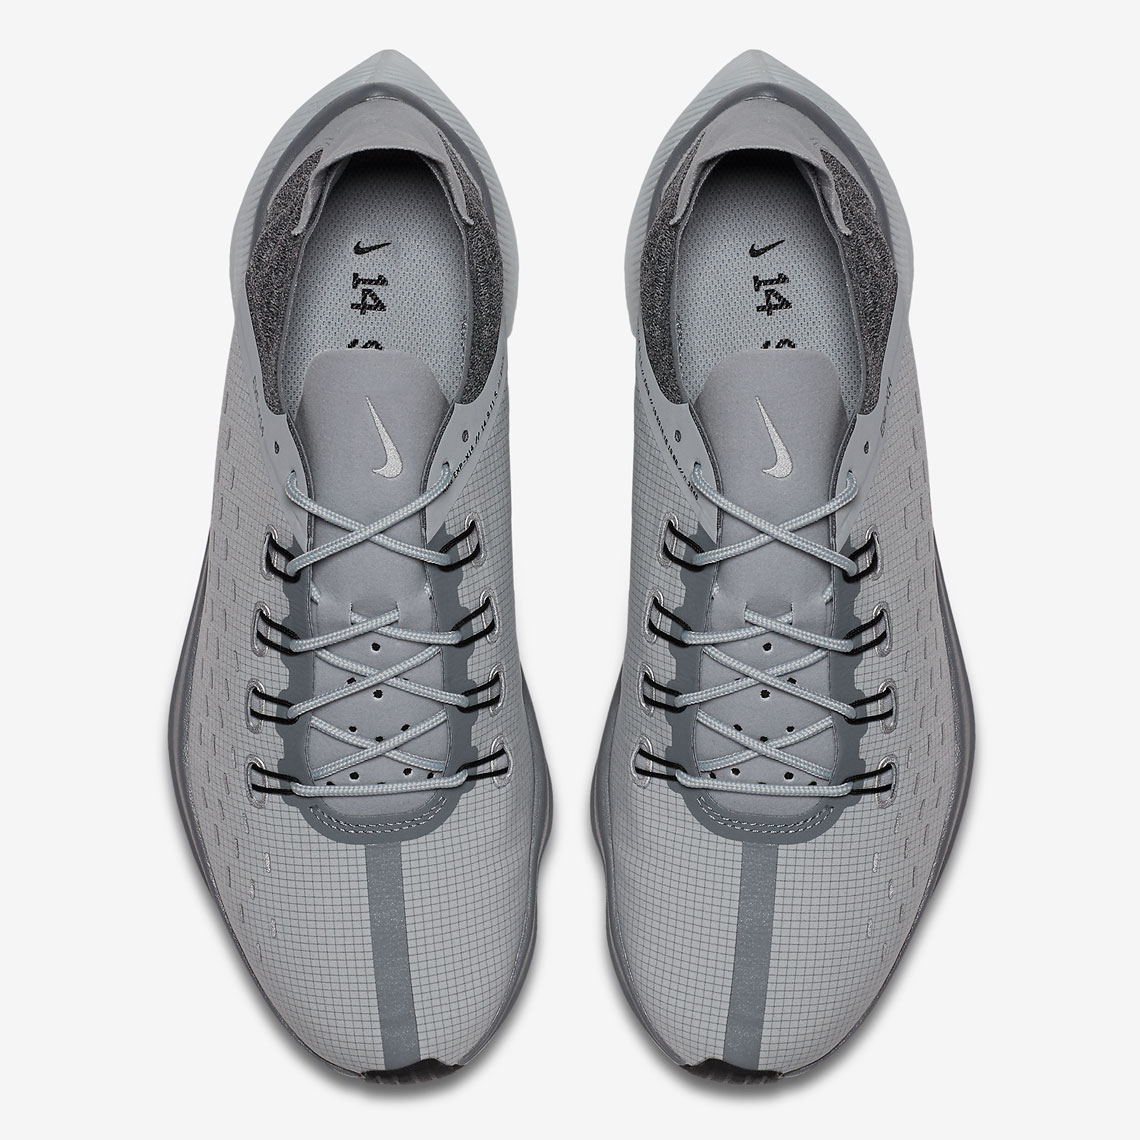 Nike EXP-X14 AO3095-002 Release Info | SneakerNews.com